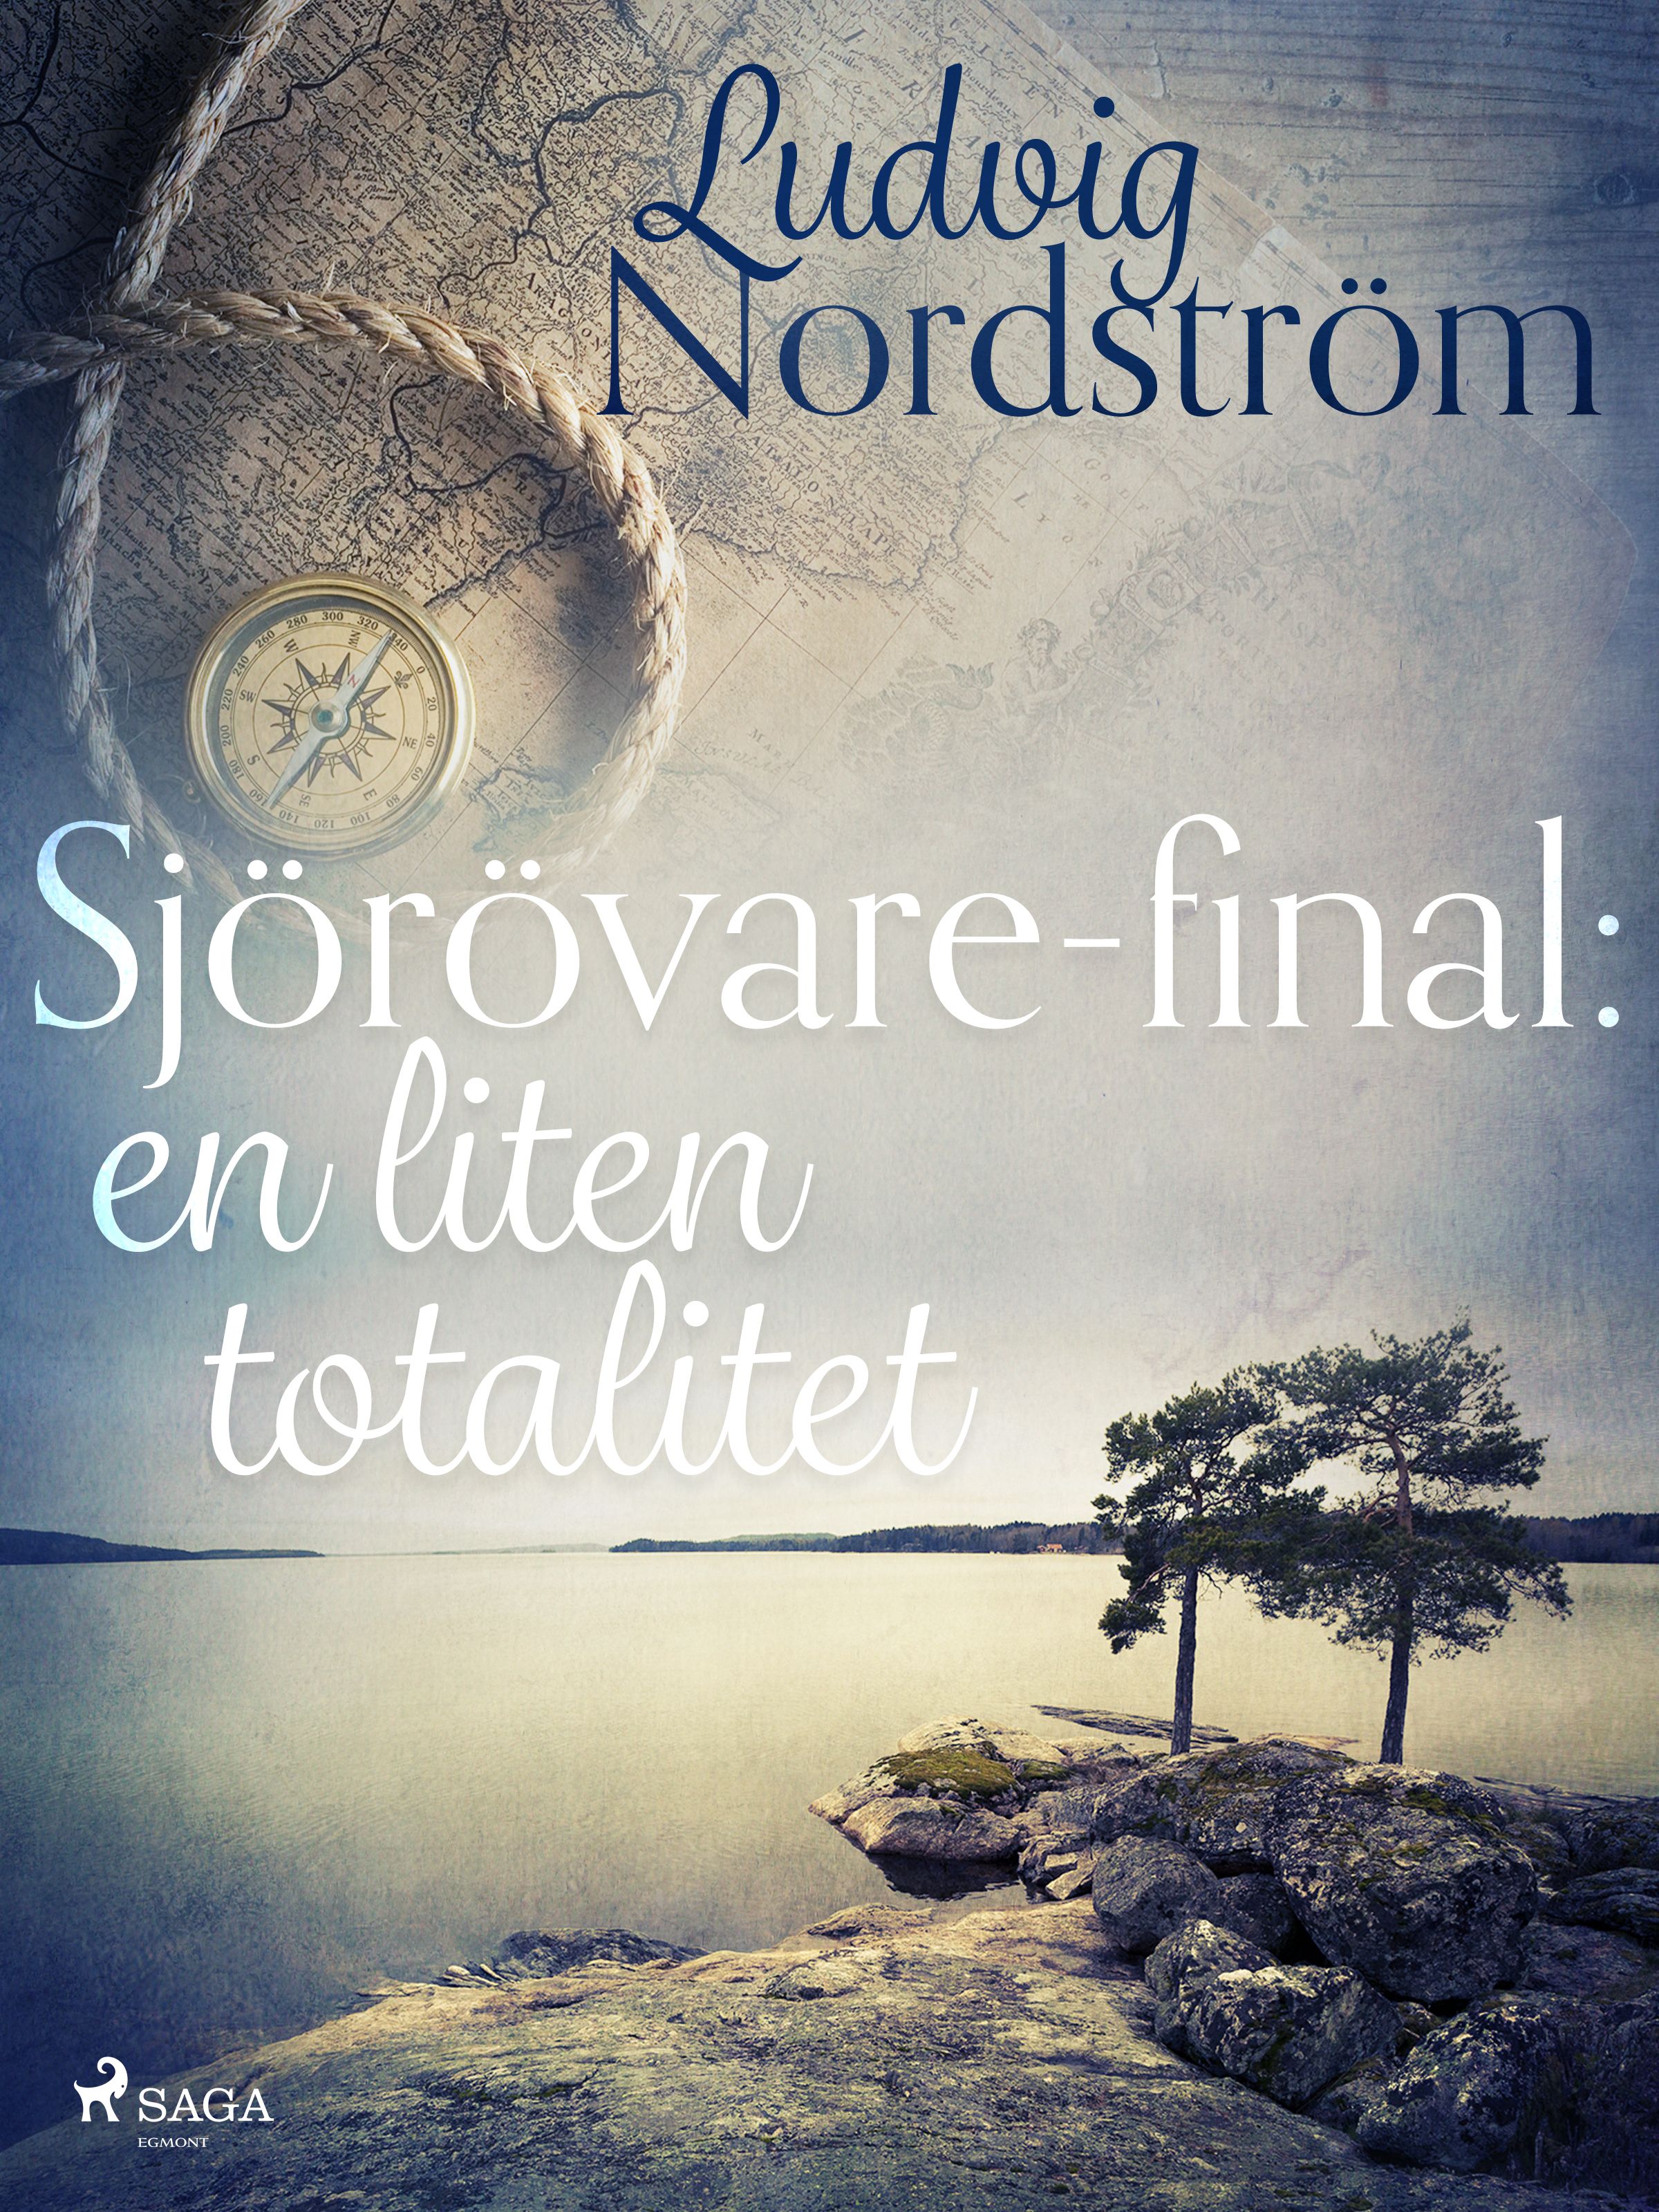 Sjörövare-final: en liten totalitet, e-bog af Ludvig Nordström